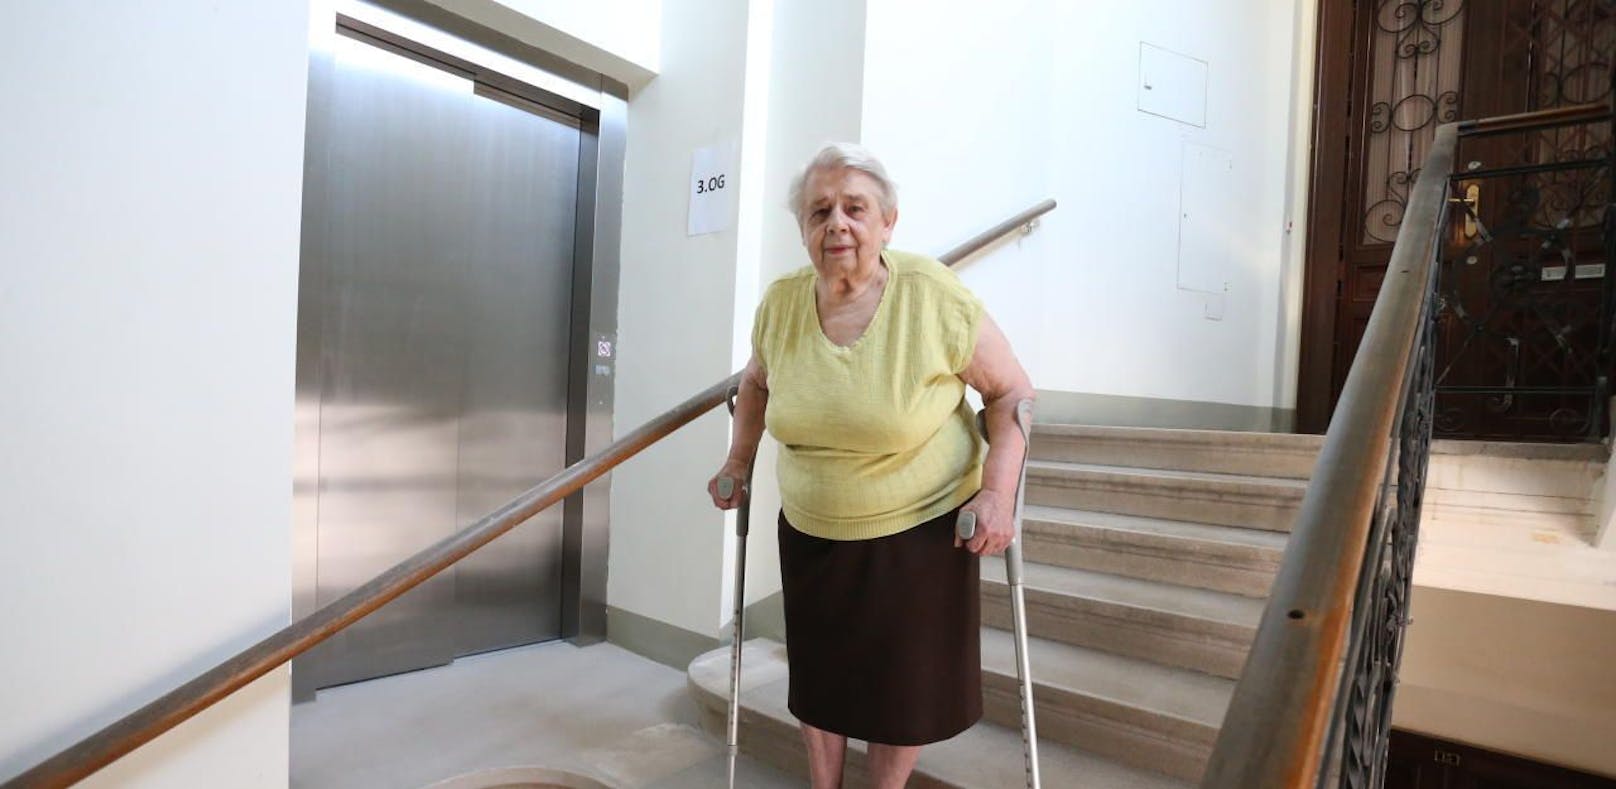 Trotz Lift: Seniorin muss in den 3. Stock gehen!